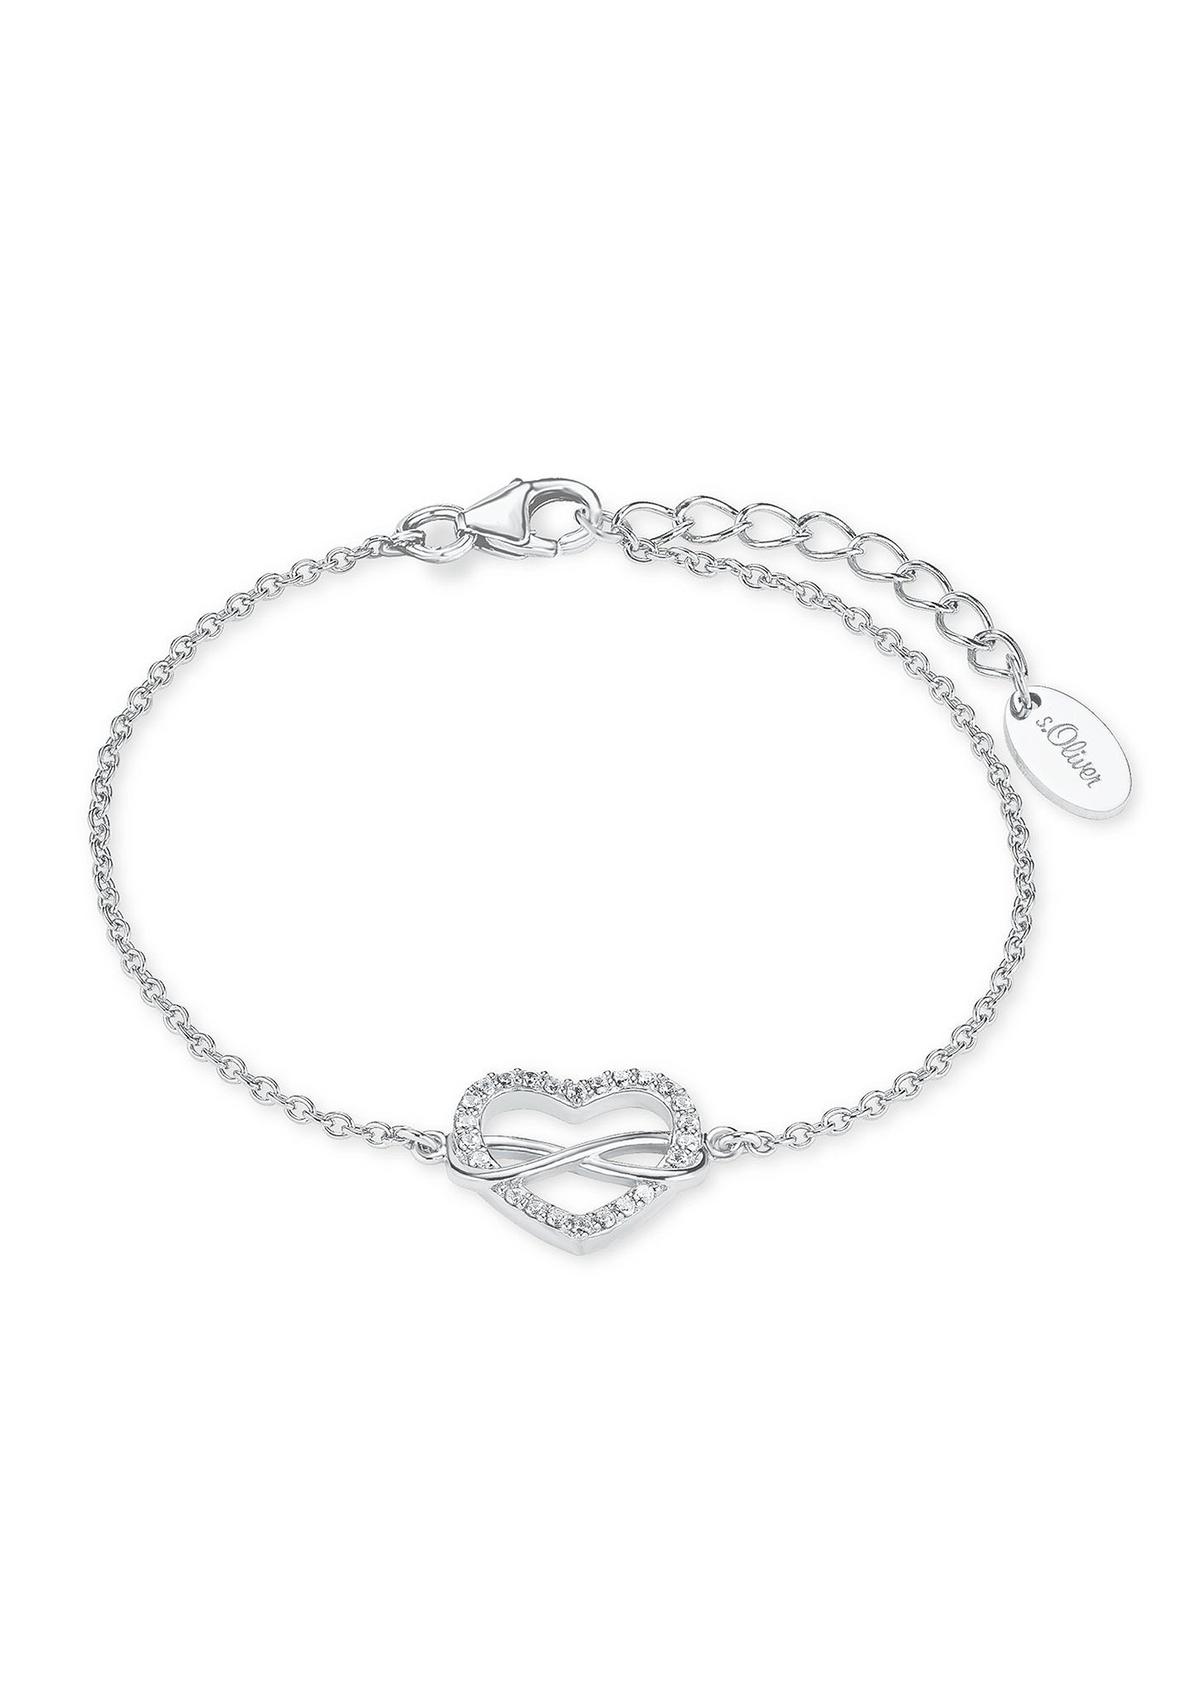 - Silber-Armband Herz/Infinity roségold